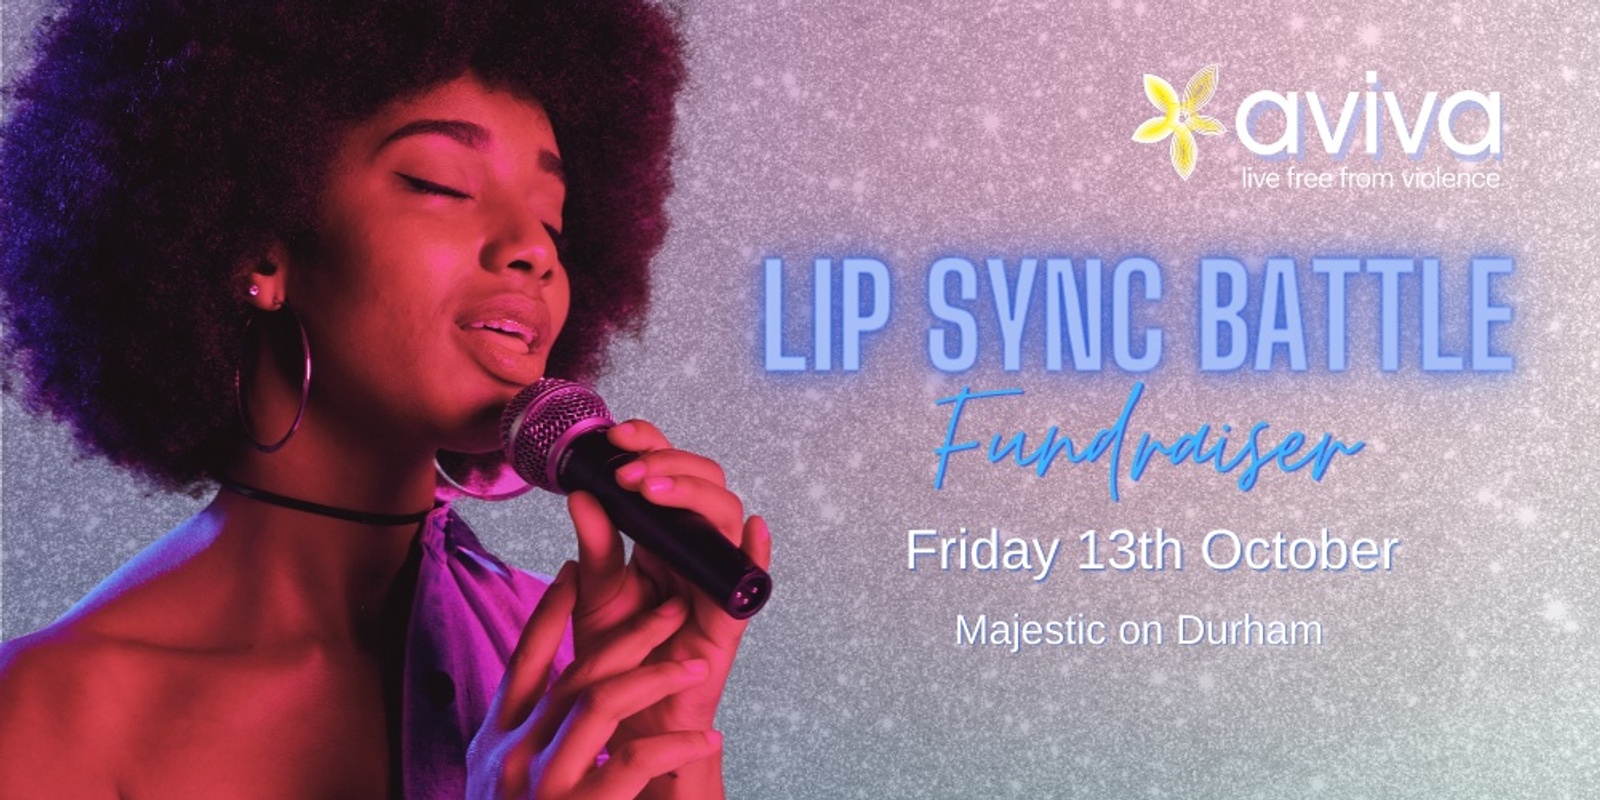 Banner image for Aviva Lip Sync Battle Fundraiser